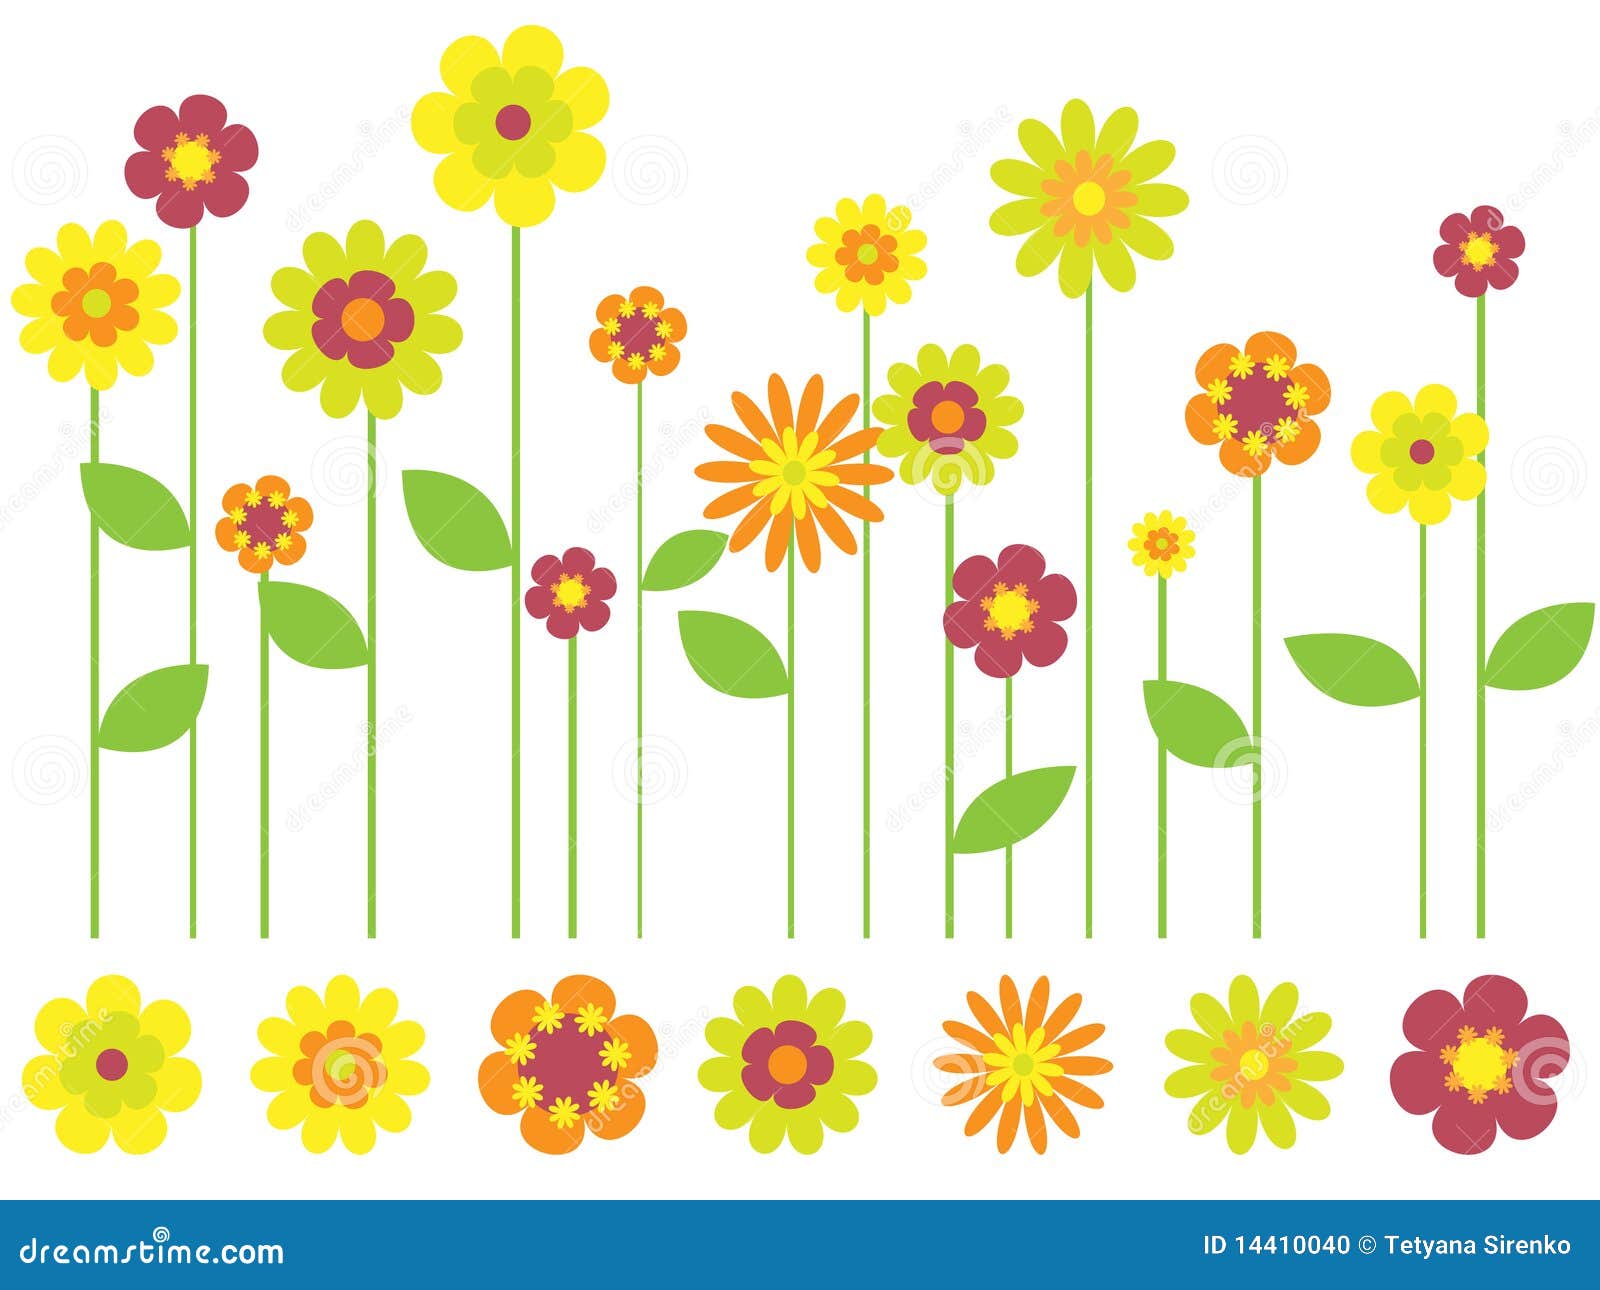 Bright Spring Flower Garden Stock Vector - Illustration of decoration ...